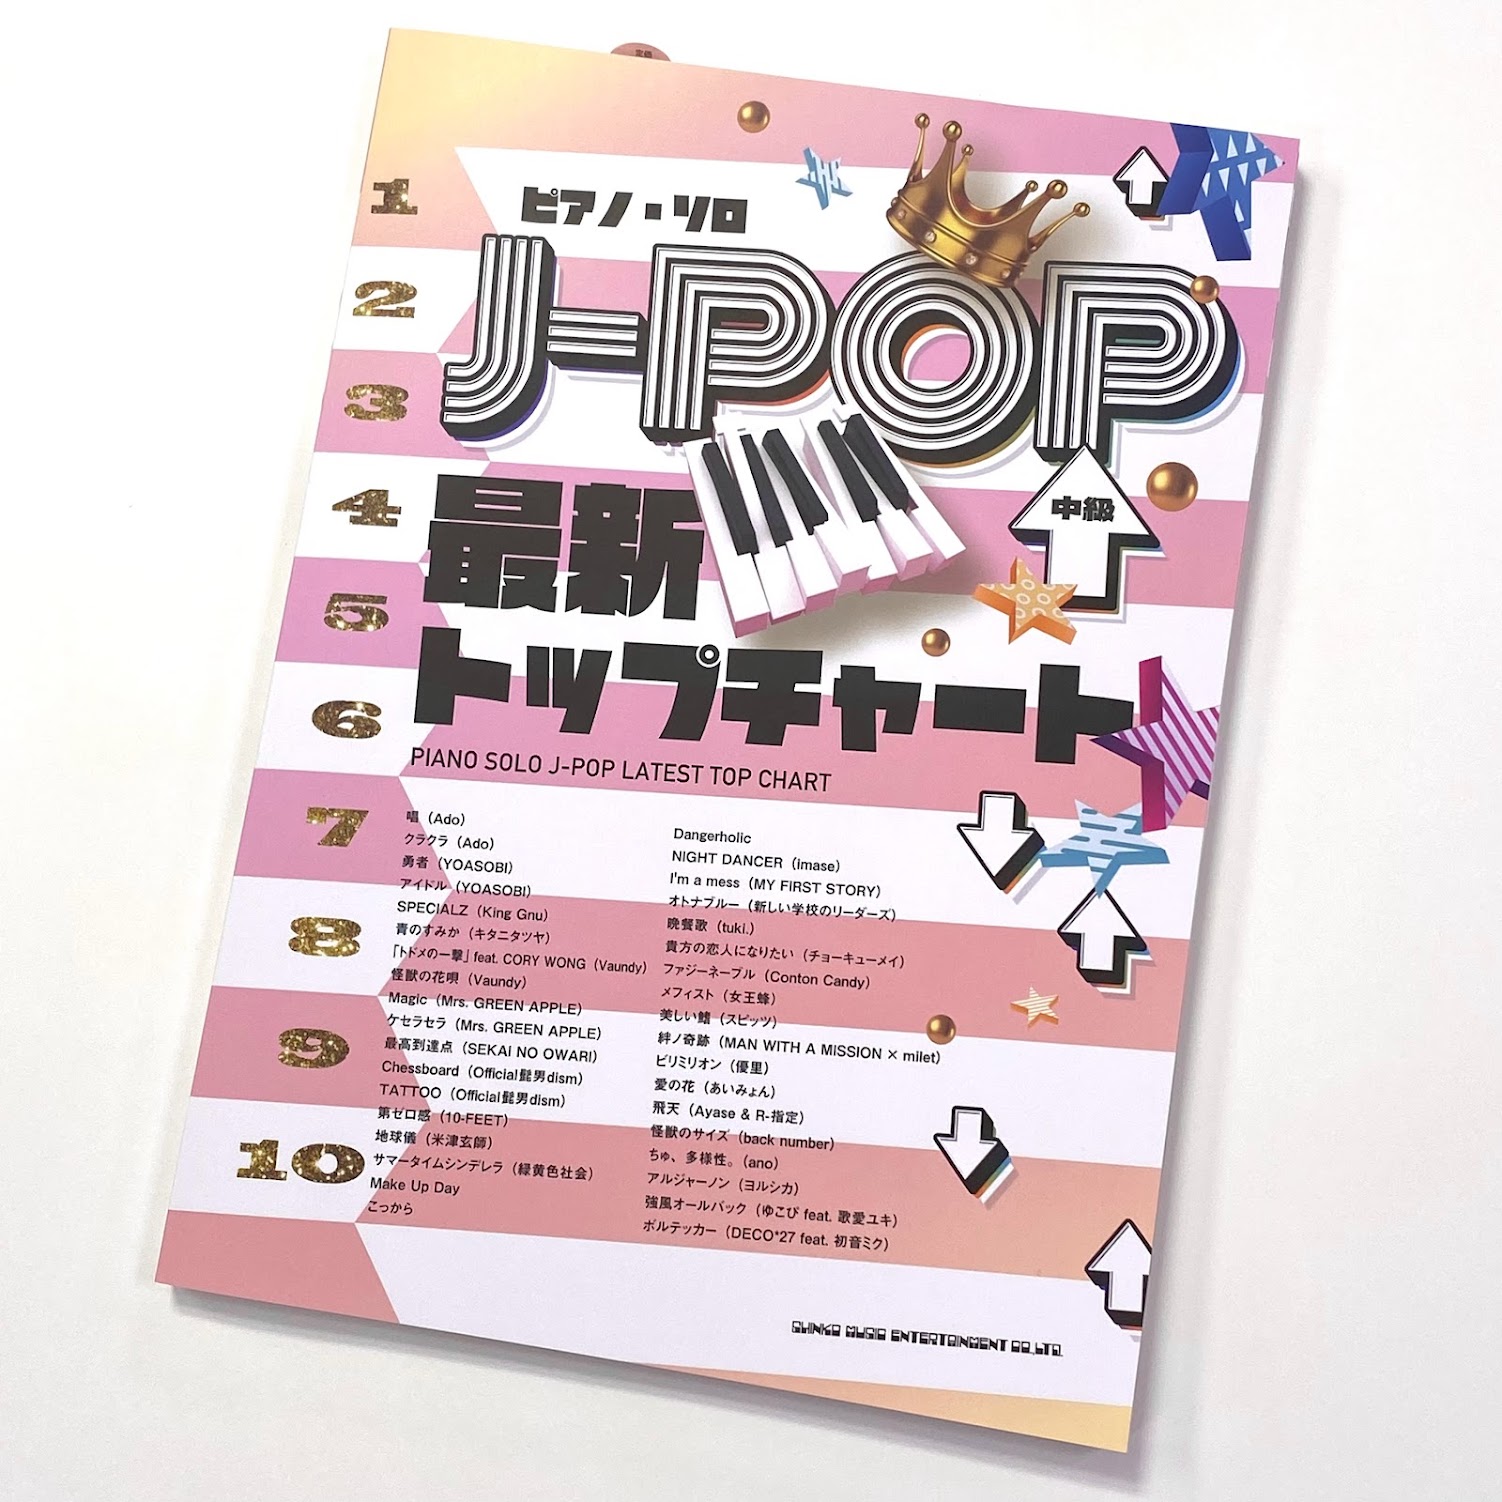 シンコーピアノ・ソロ J-POP最新トップチャート